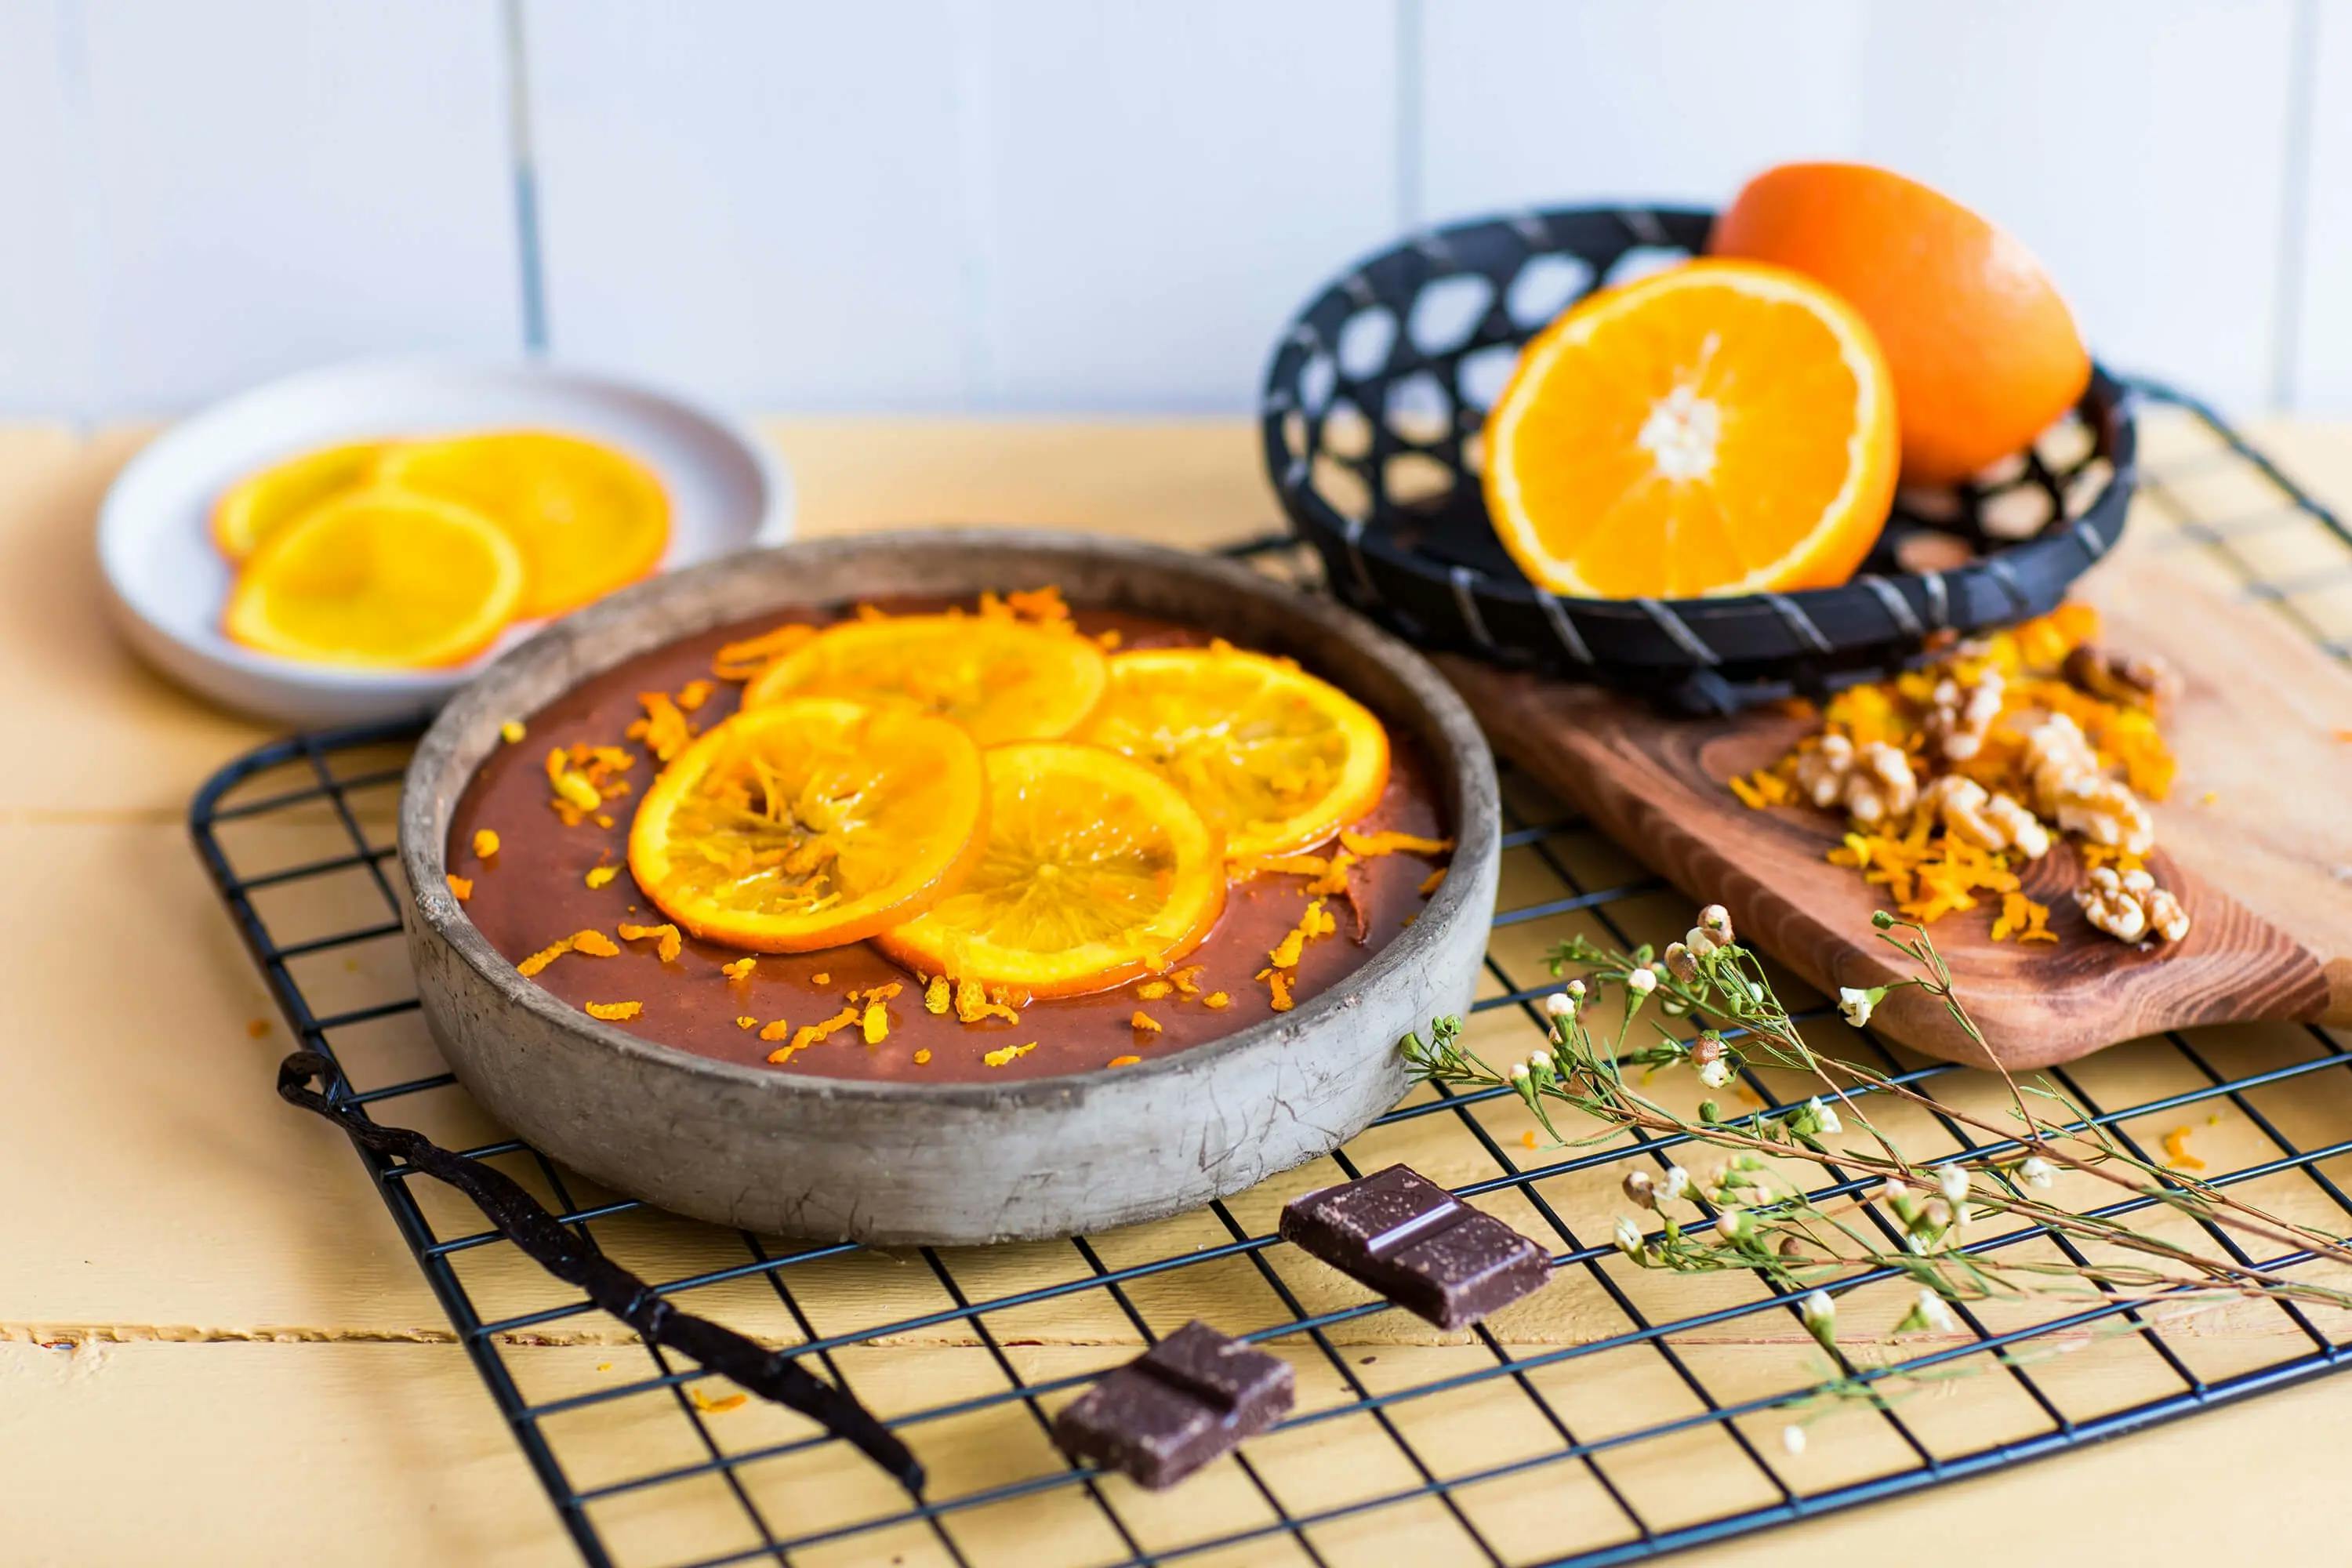 Stekefri sjokoladekake med nøtter og appelsin